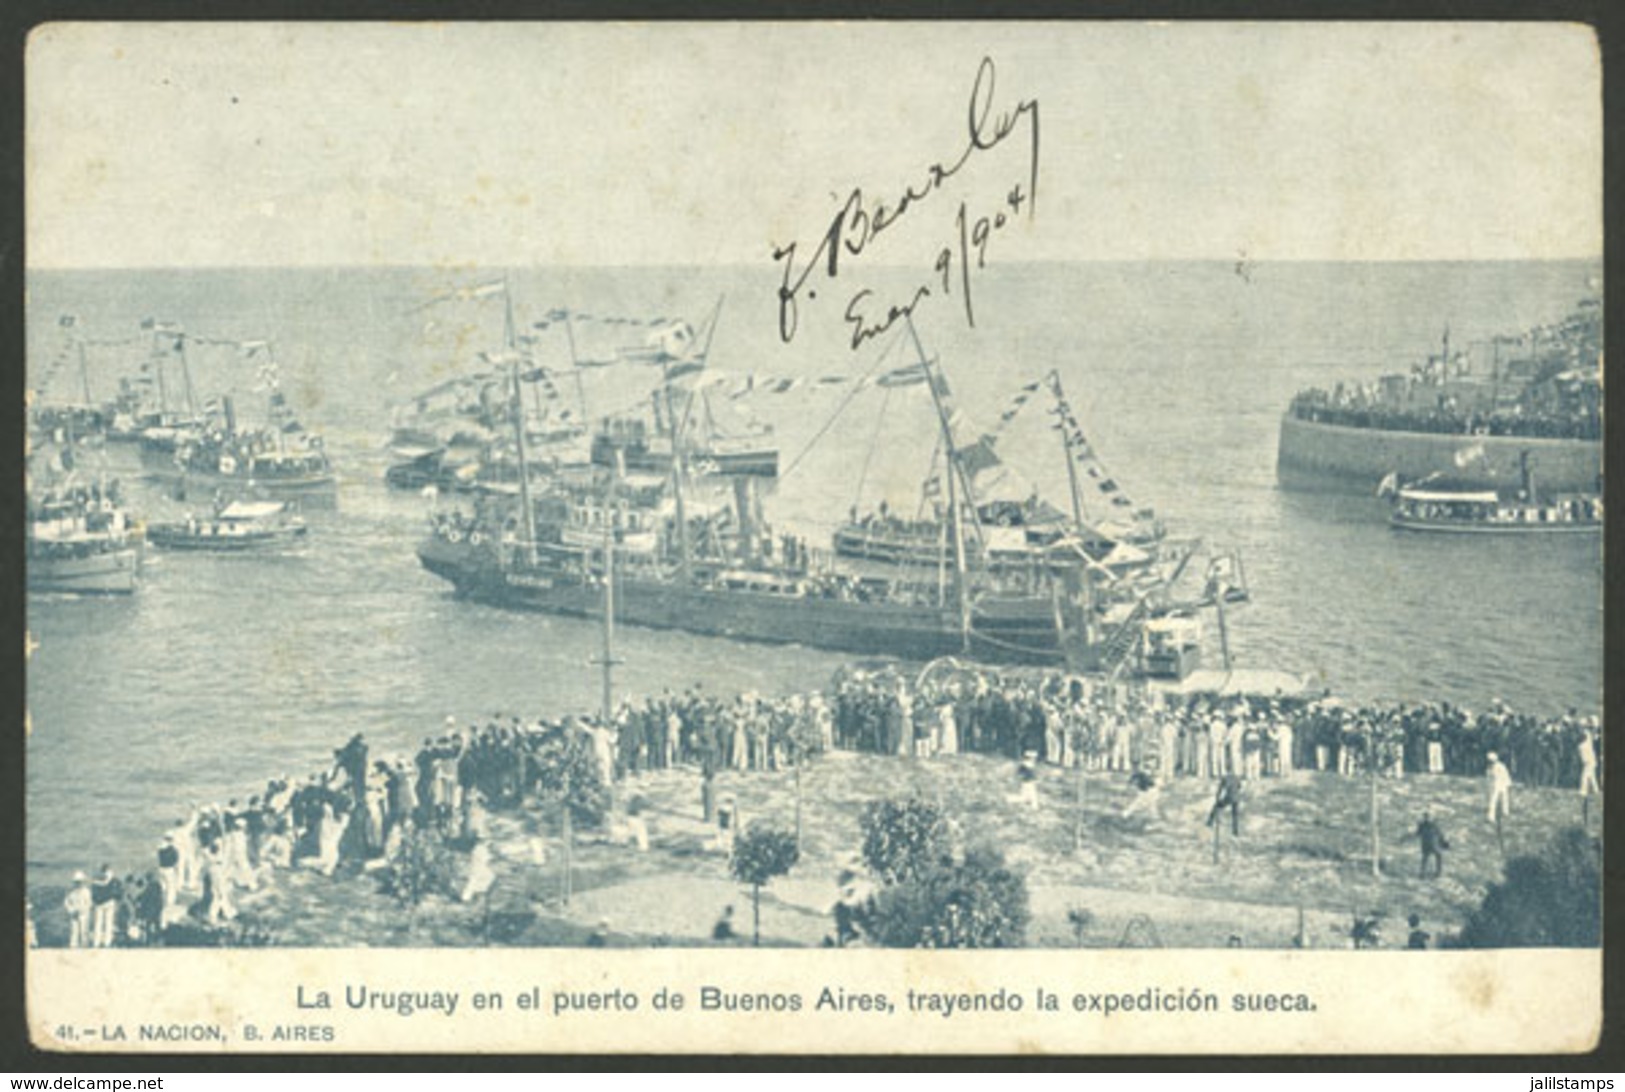 ARGENTINE ANTARCTICA: "La Uruguay" In The Port Of Buenos Aires, Bringing The Swedish Expedition, Edited By La Nación, Us - Argentina